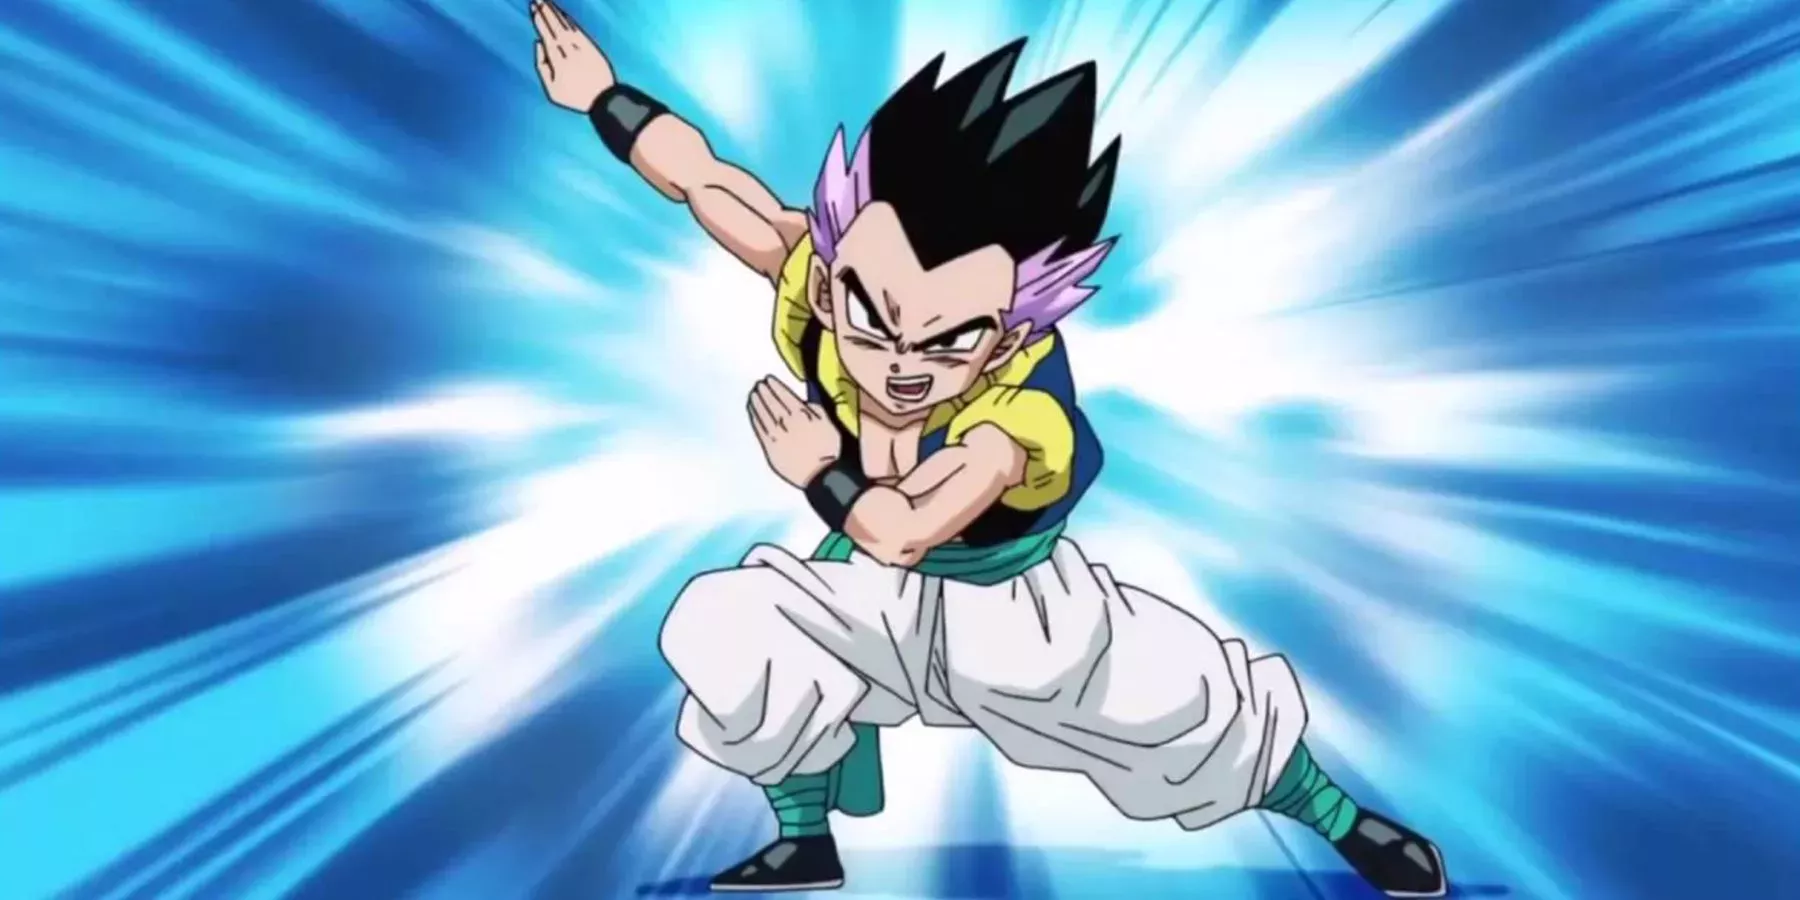 Dragon Ball: Los 10 aliados más fuertes de Goku, clasificados | Cultture